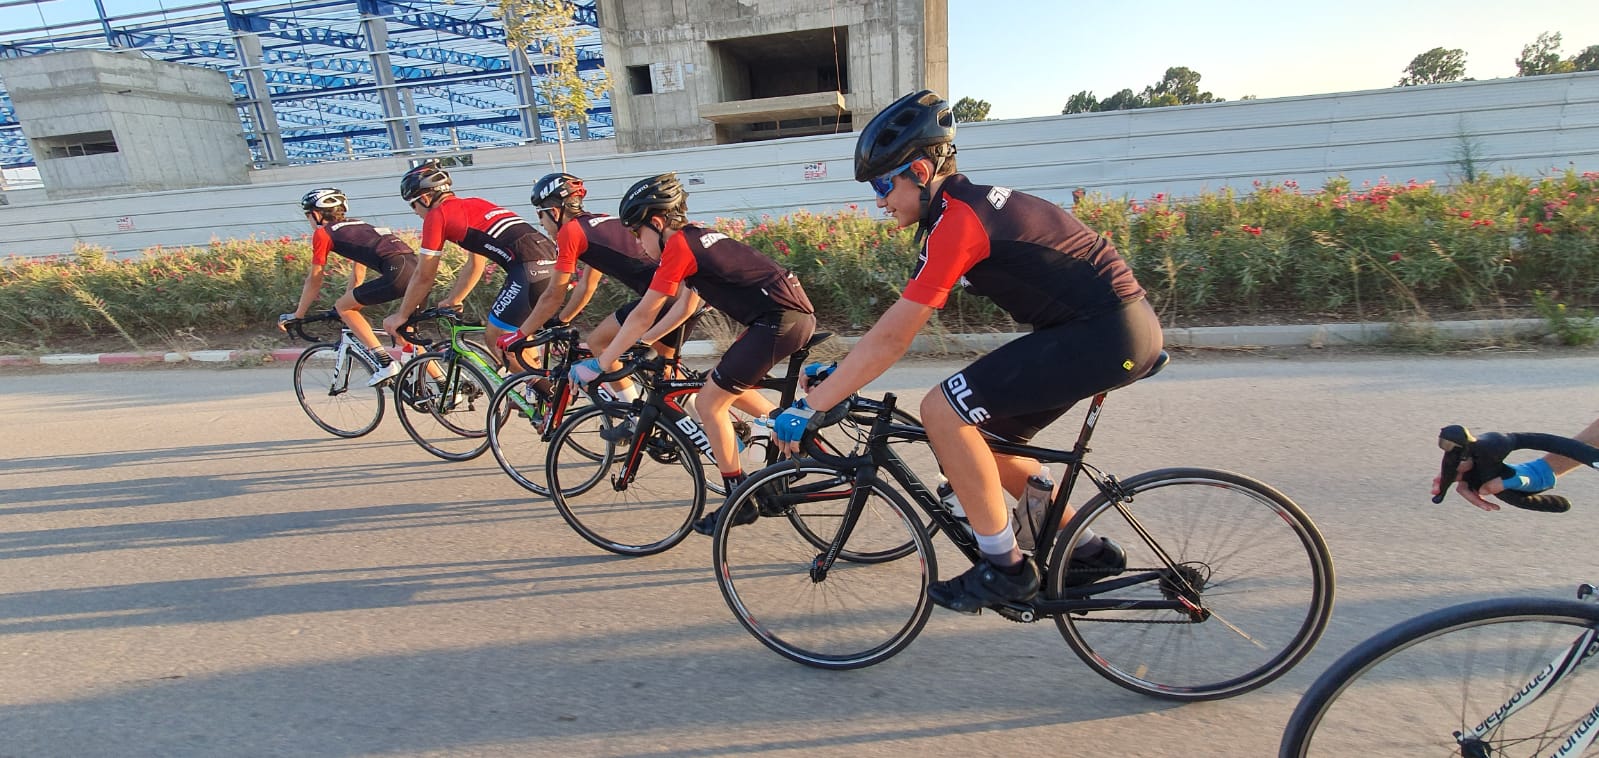 נבחרת הרוכבים התחרותיים של מועדון האופניים 500 וואט עמקים